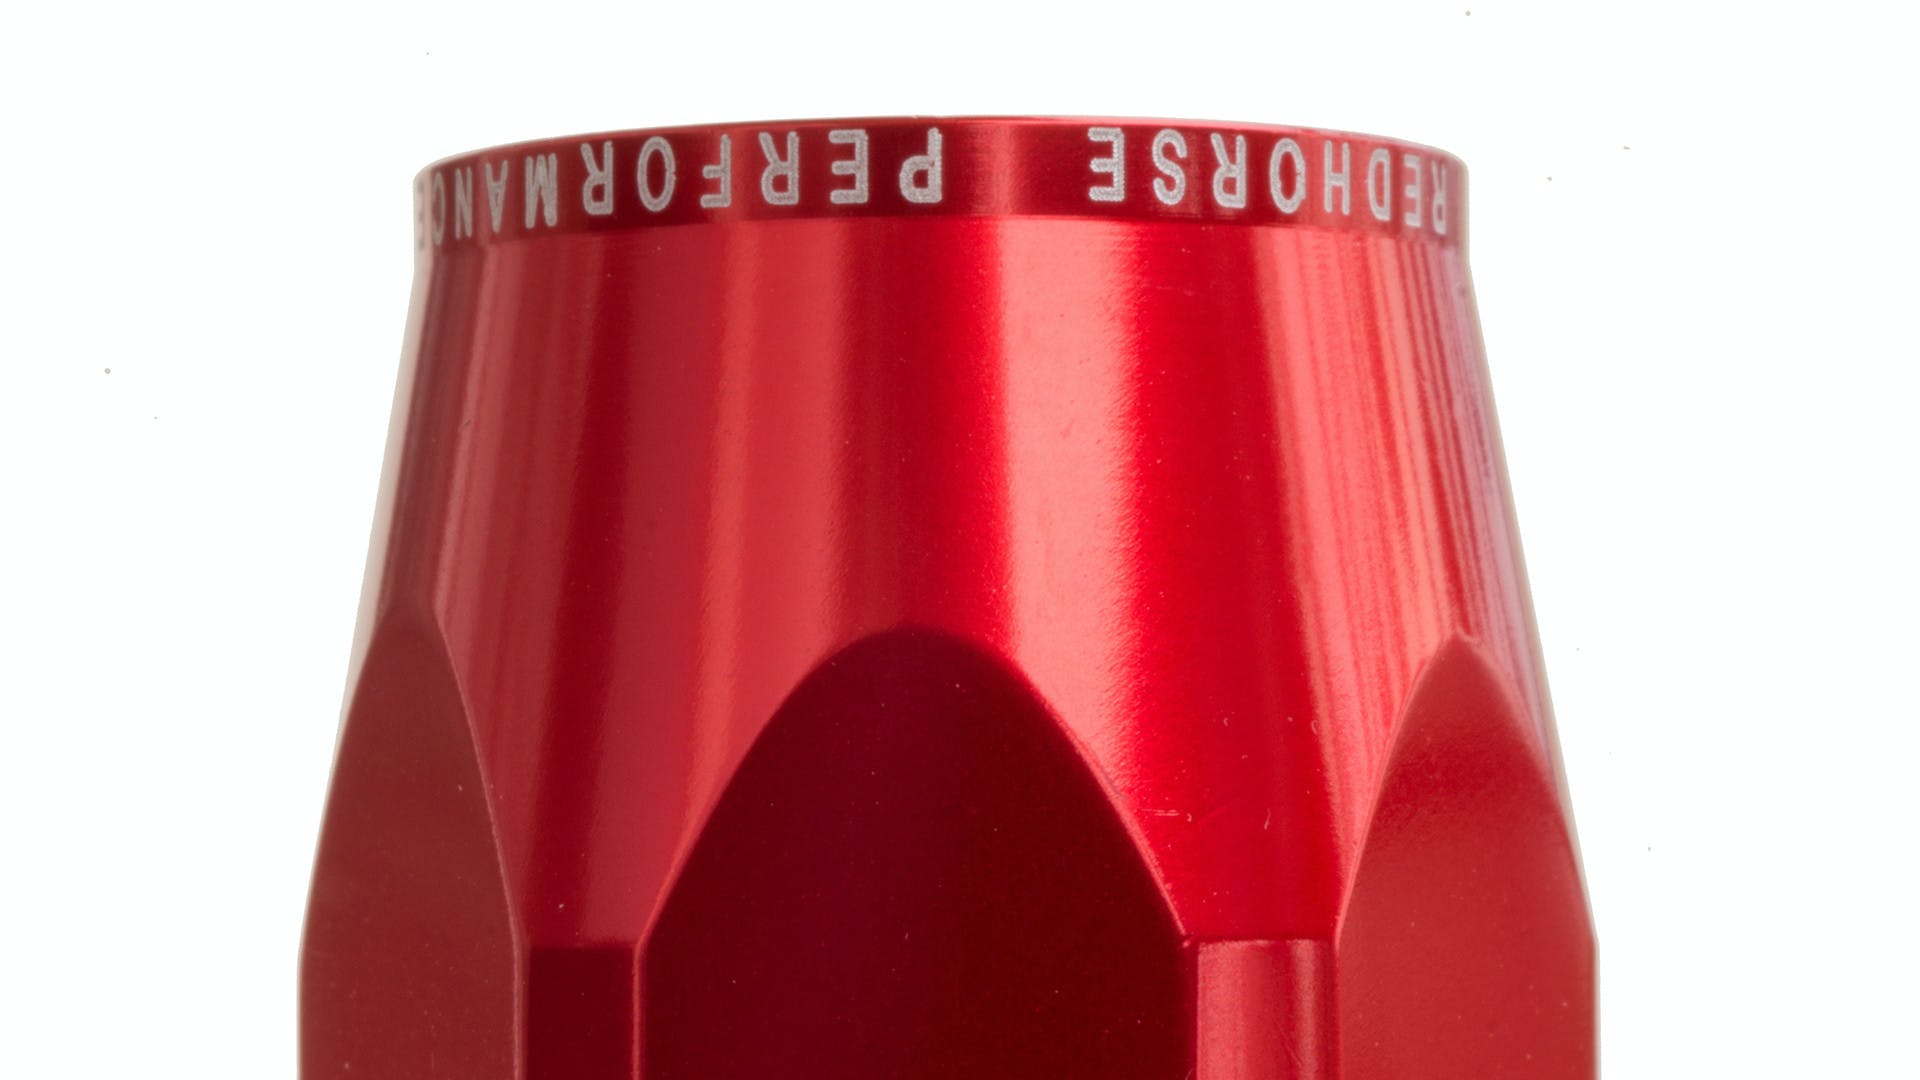 Redhorse Performance 1400-12-3 -12 hose end socket - red